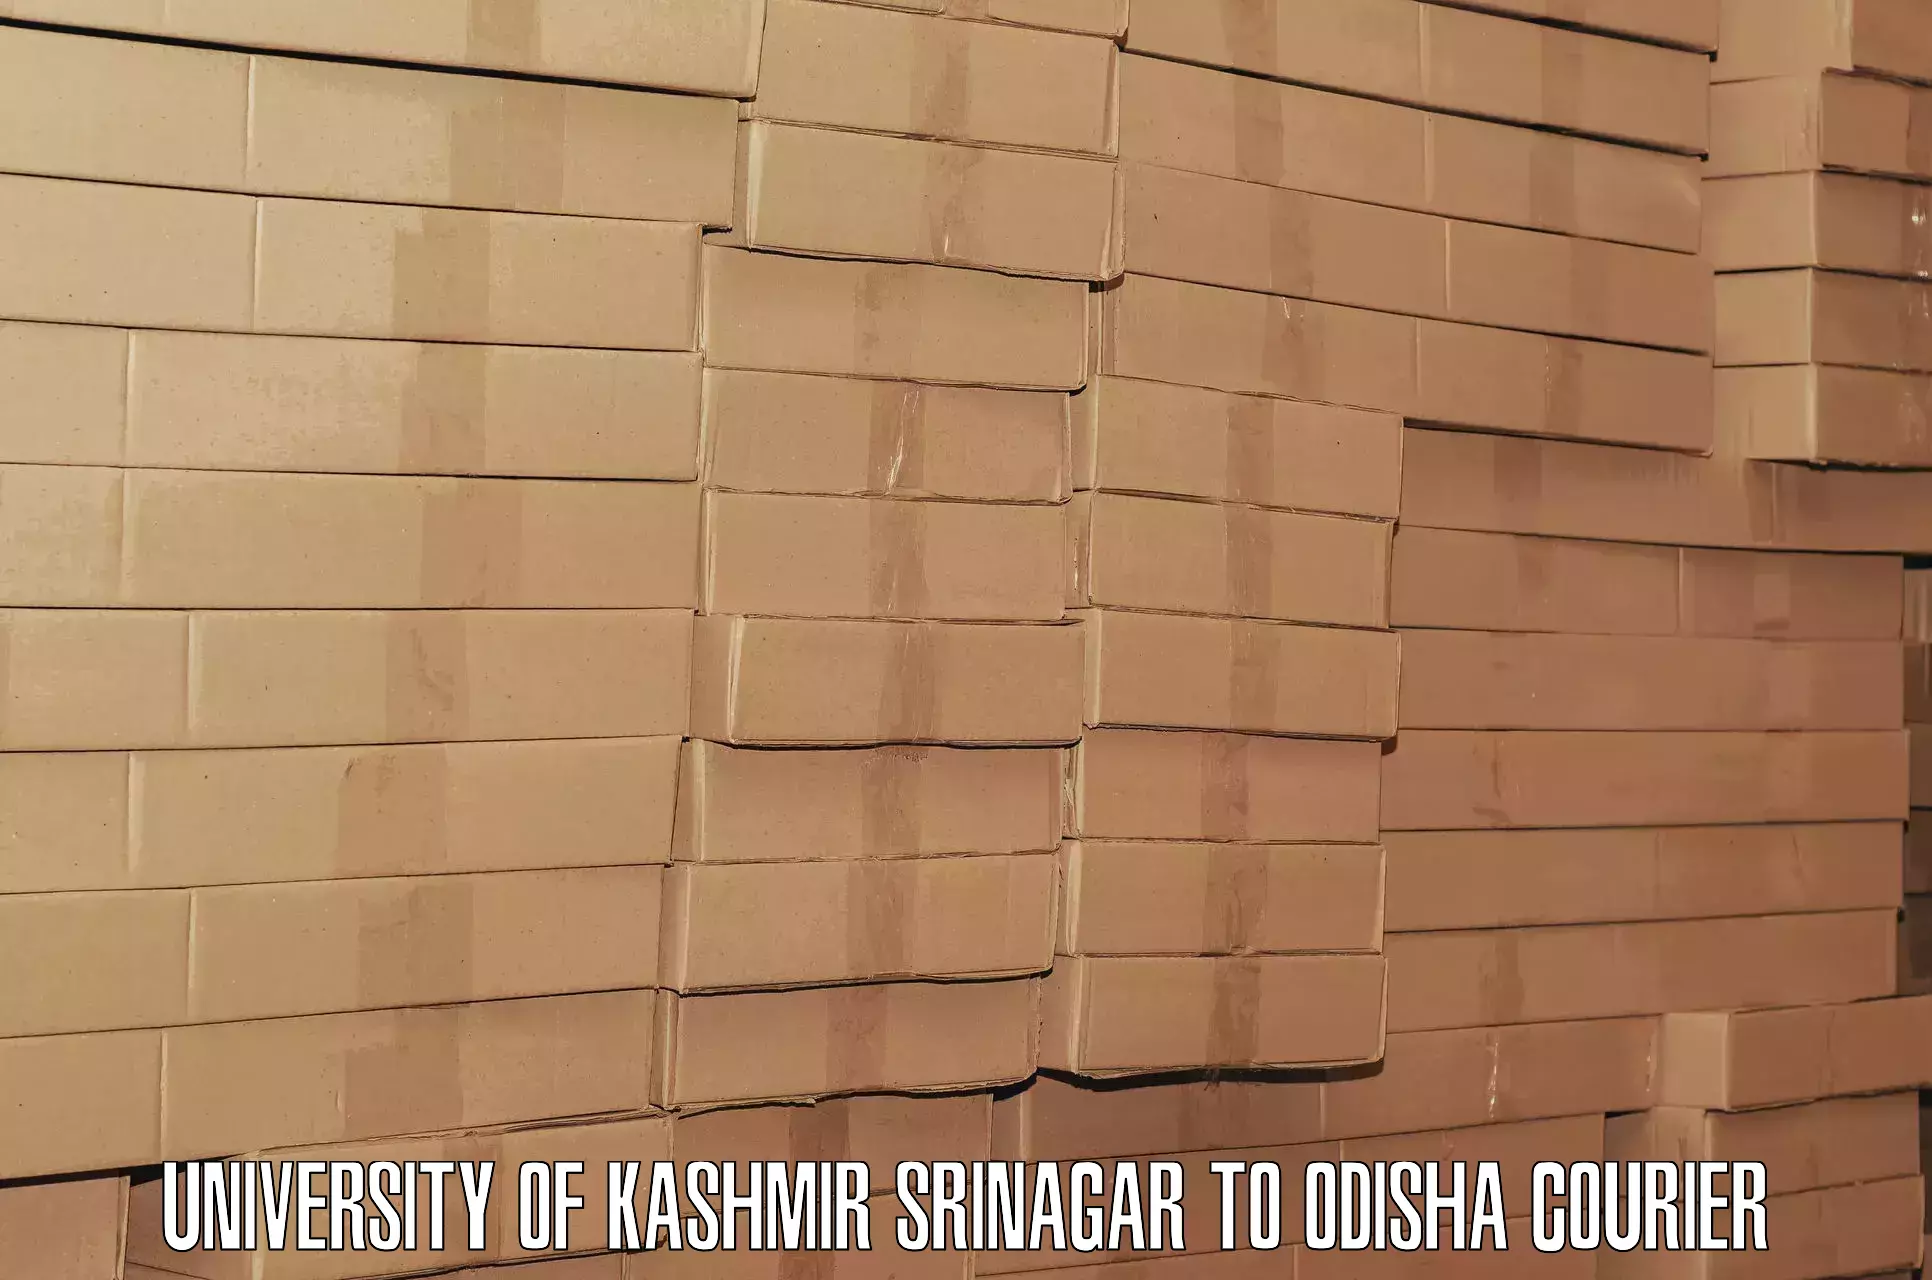 Emergency baggage service University of Kashmir Srinagar to Bangriposi